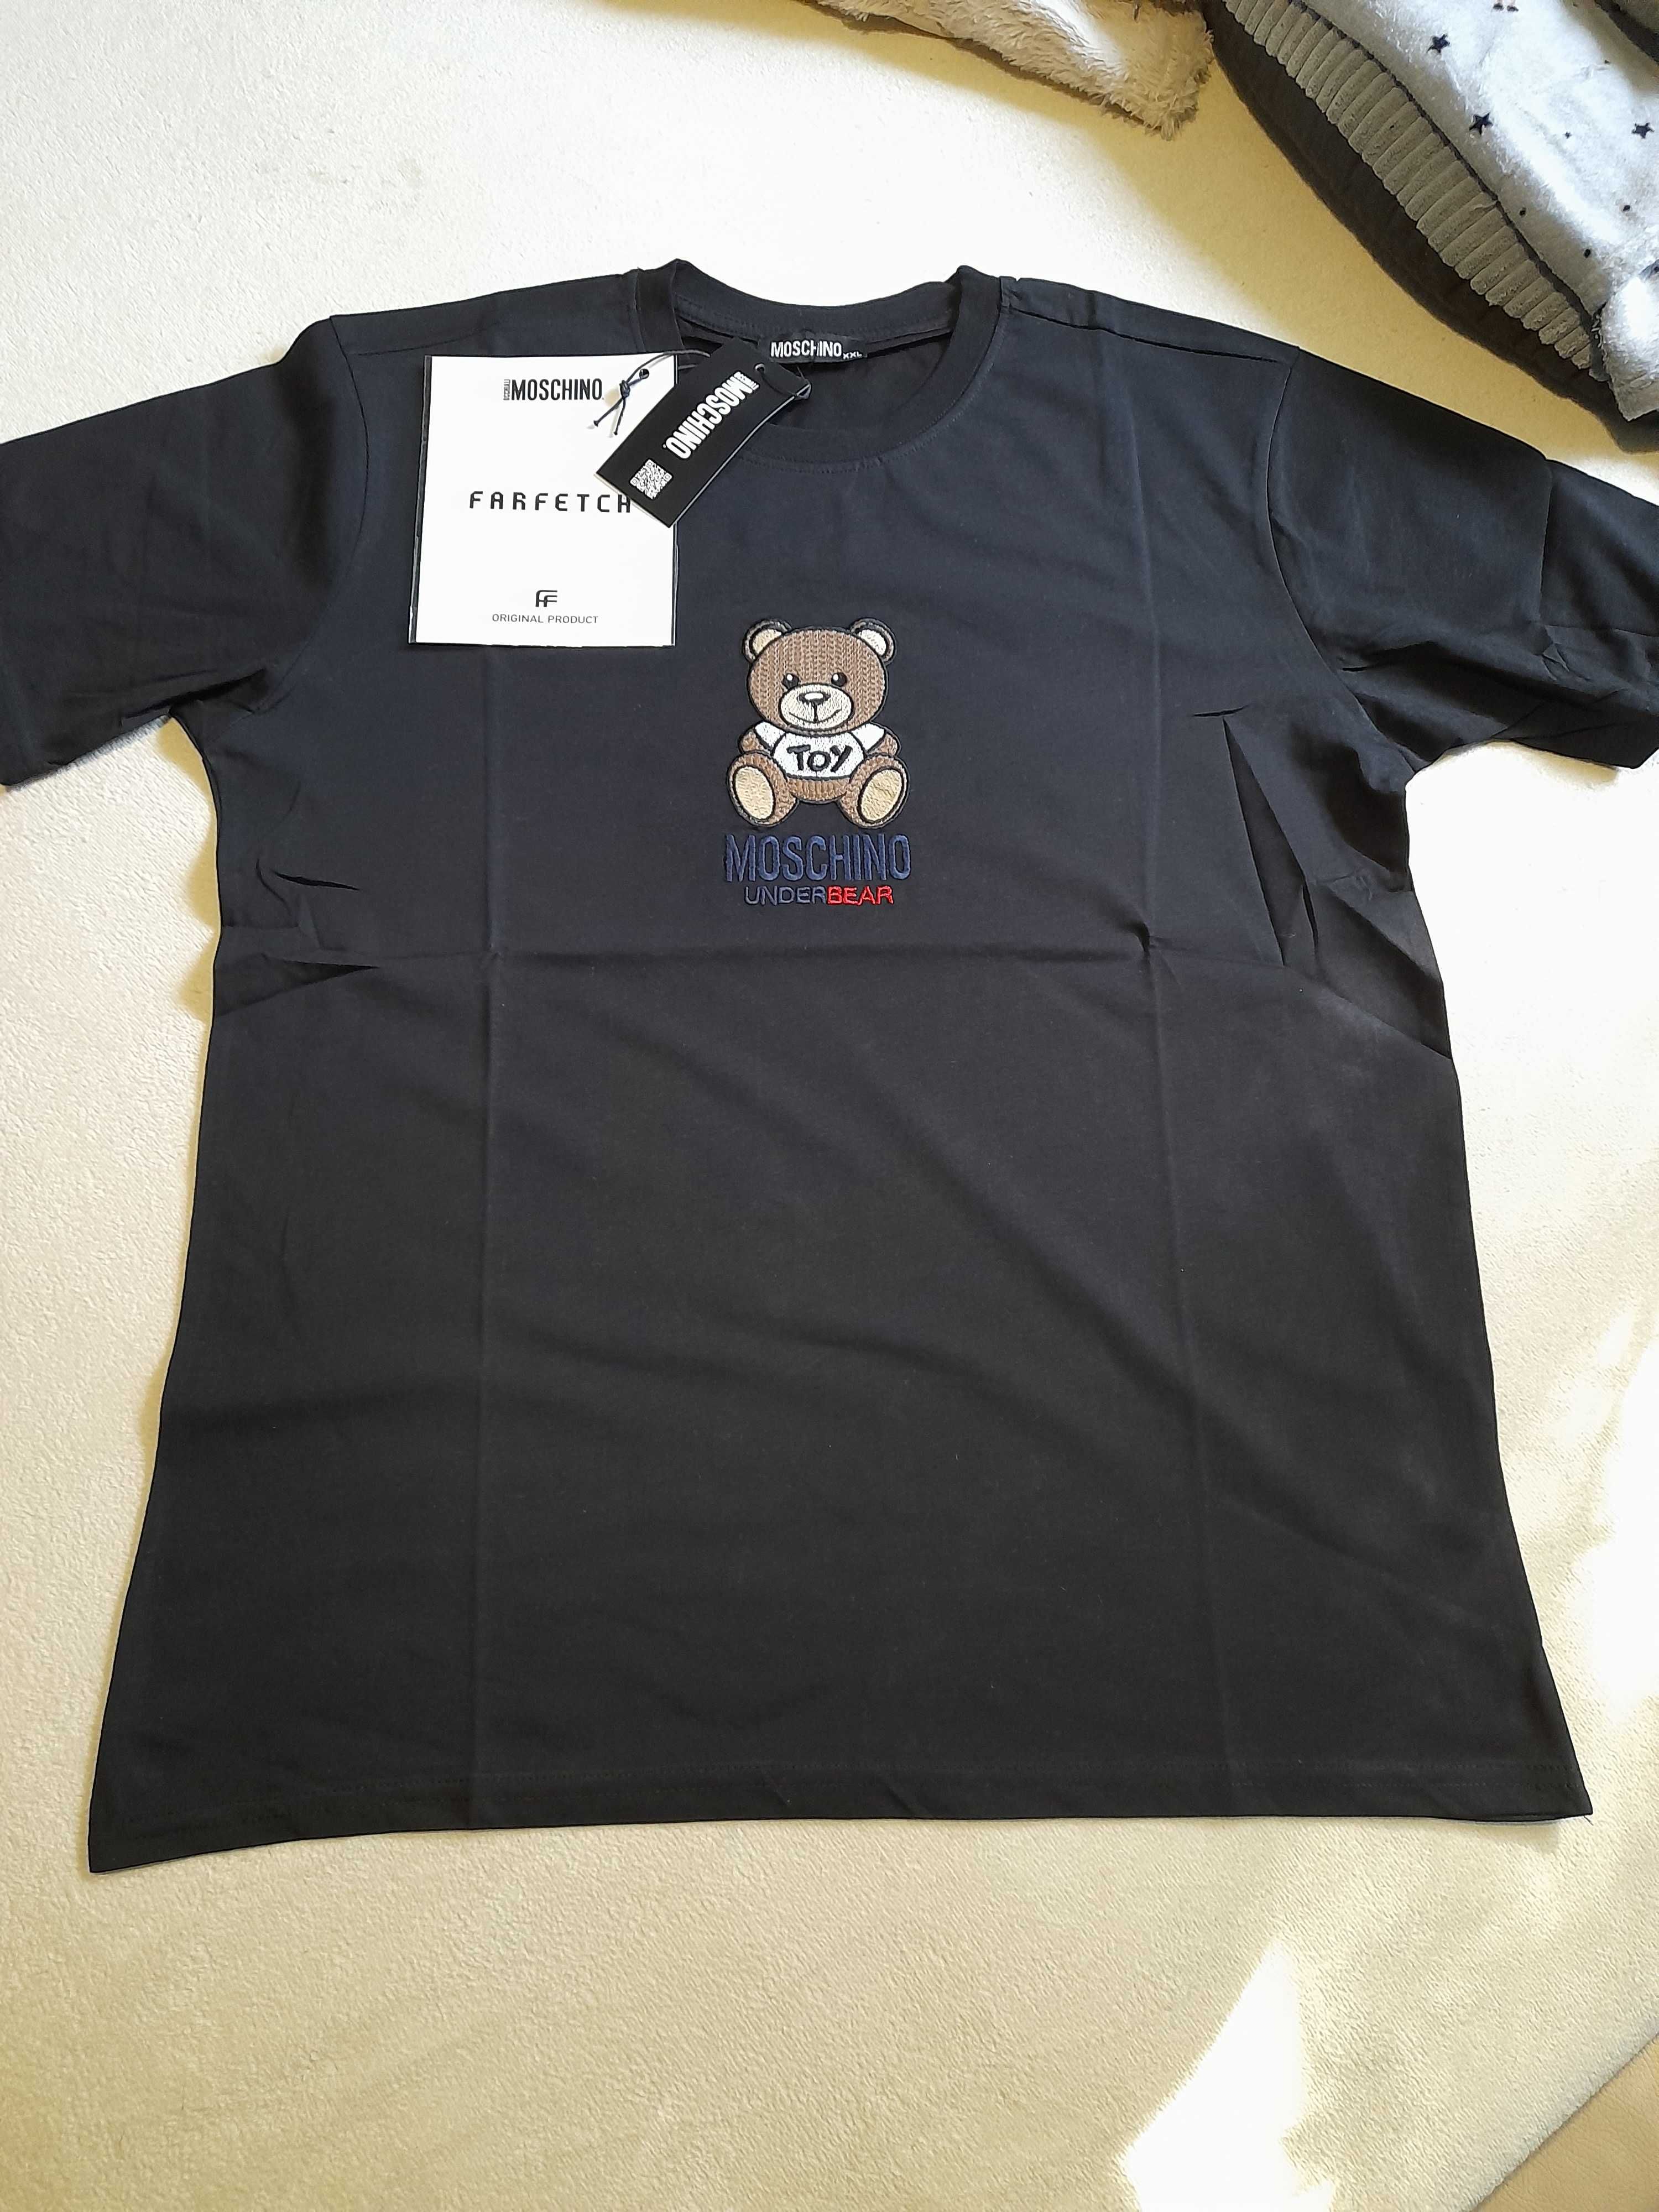 Moschino tshirt meski under bear rozm. 2xl kolor czarny bawełna nowy